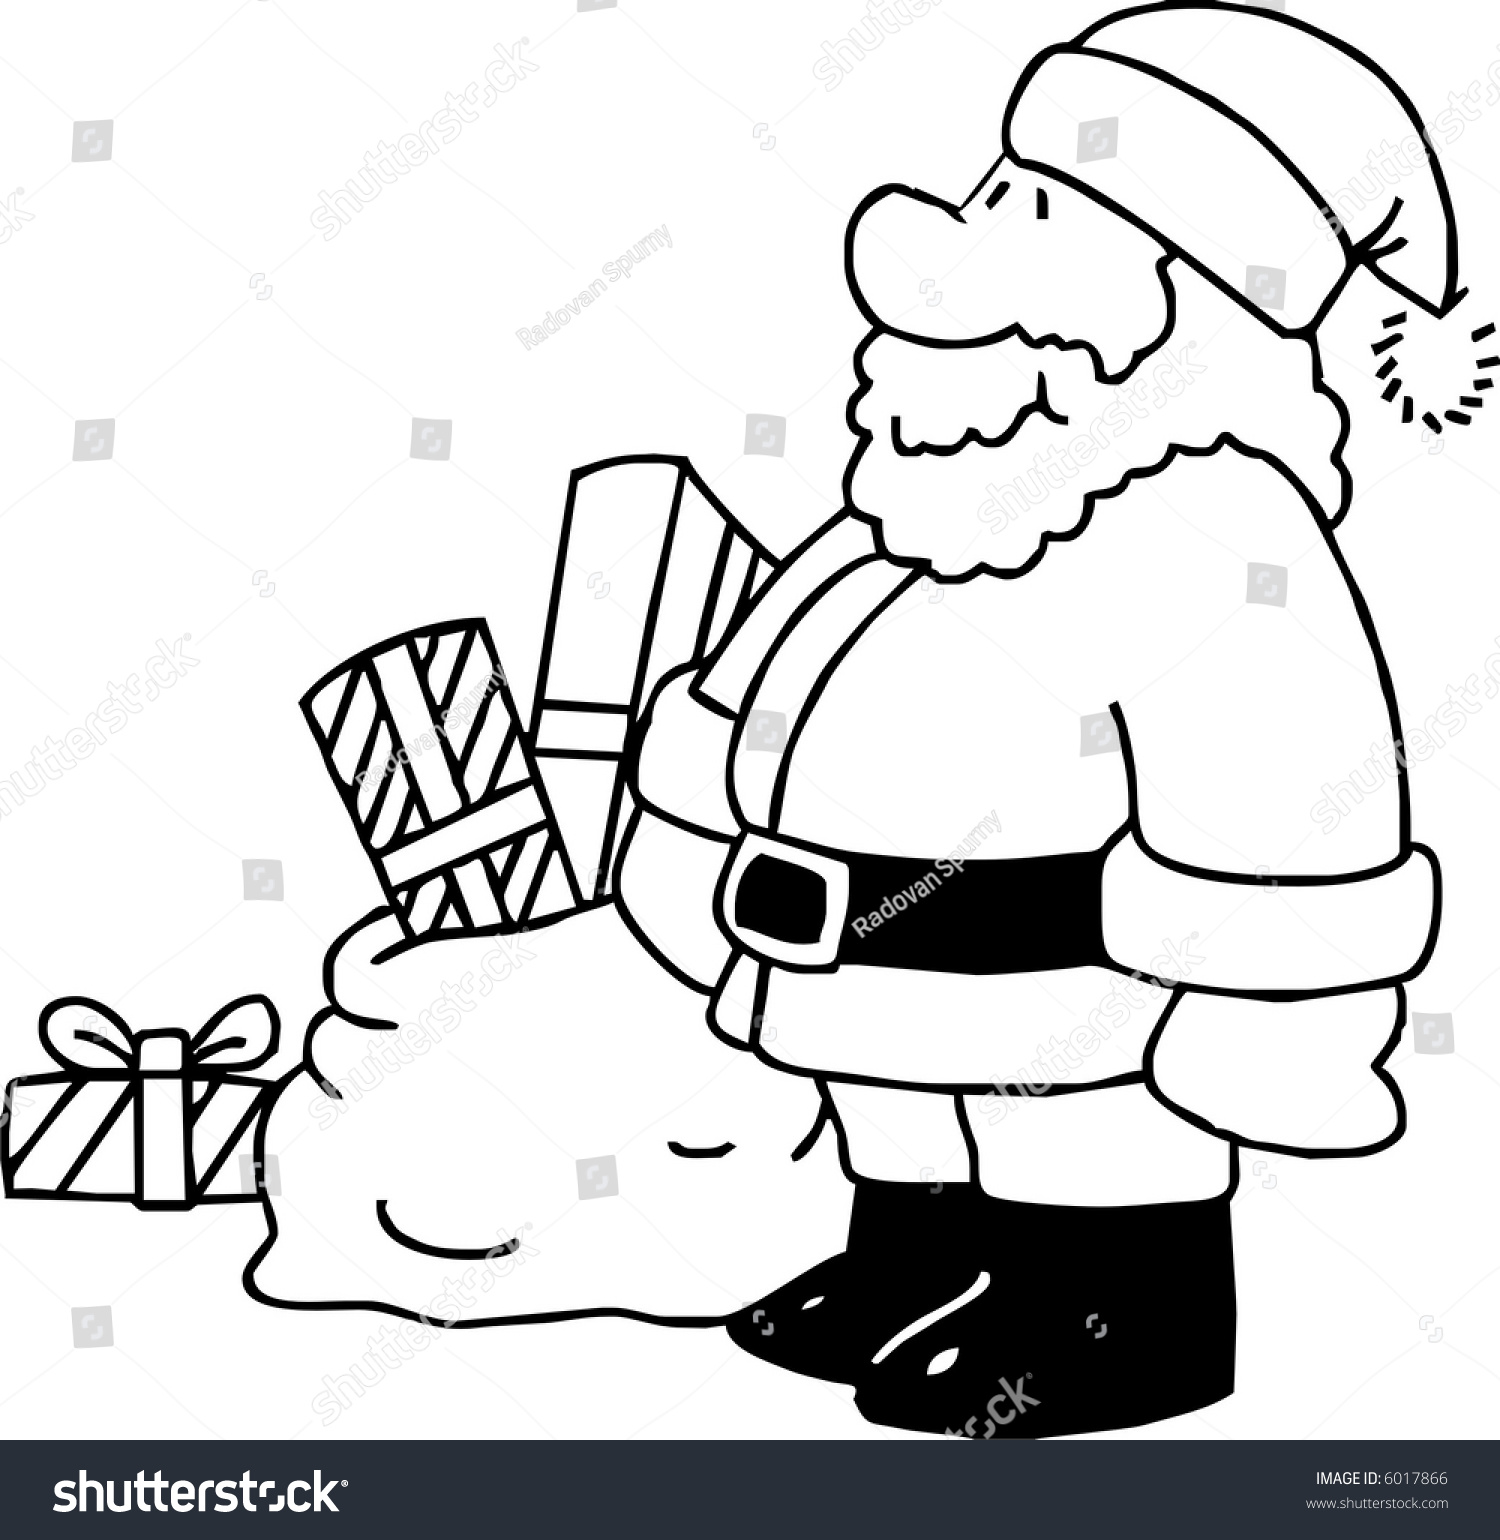 Santa Claus Stock Vector Illustration 6017866 : Shutterstock